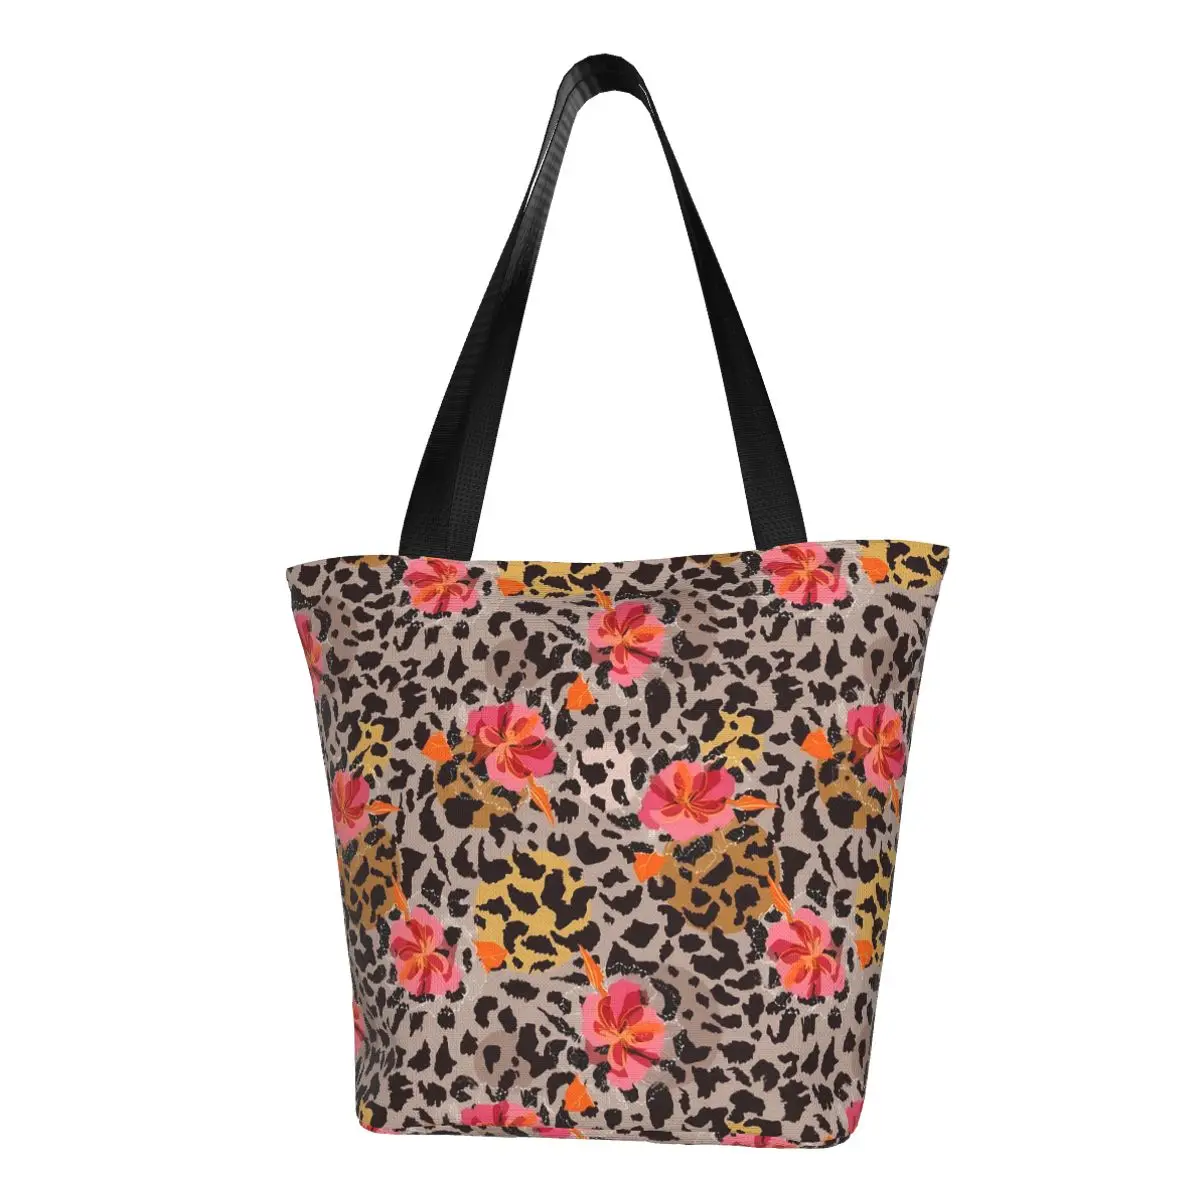 

Цветочная леопардовая сумка для покупок, школьные сумки с тропическим принтом, женская сумка на плечо с графическим дизайном, симпатичная тканевая сумка-тоут